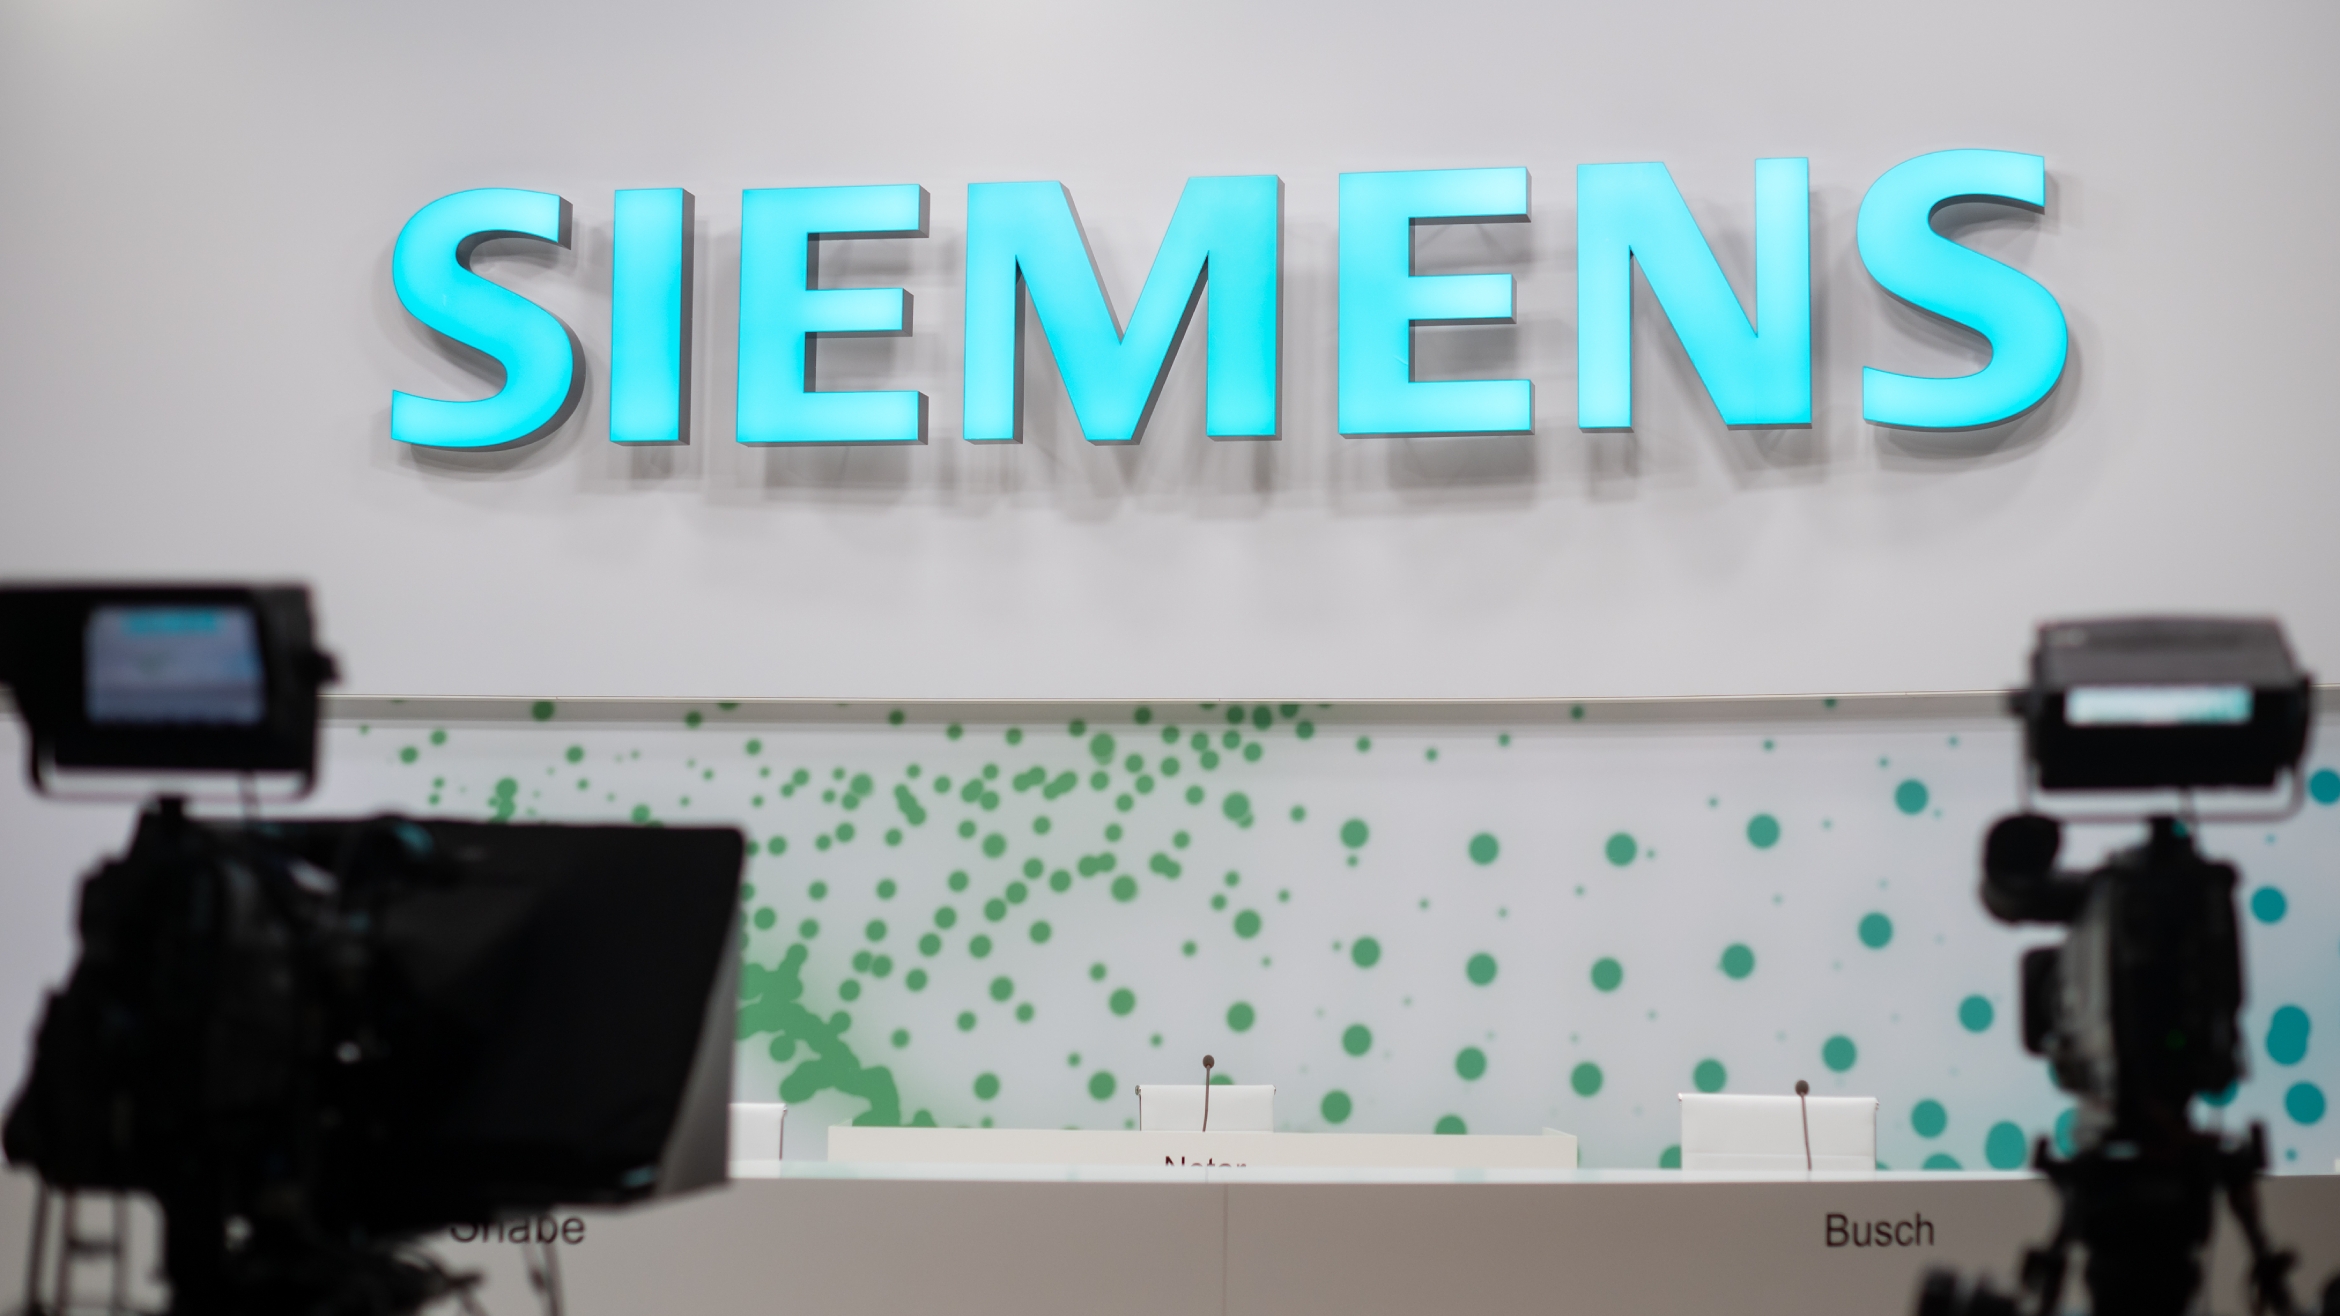 Siemens kommuniziert am besten zu gesellschaftlichen Debatten –